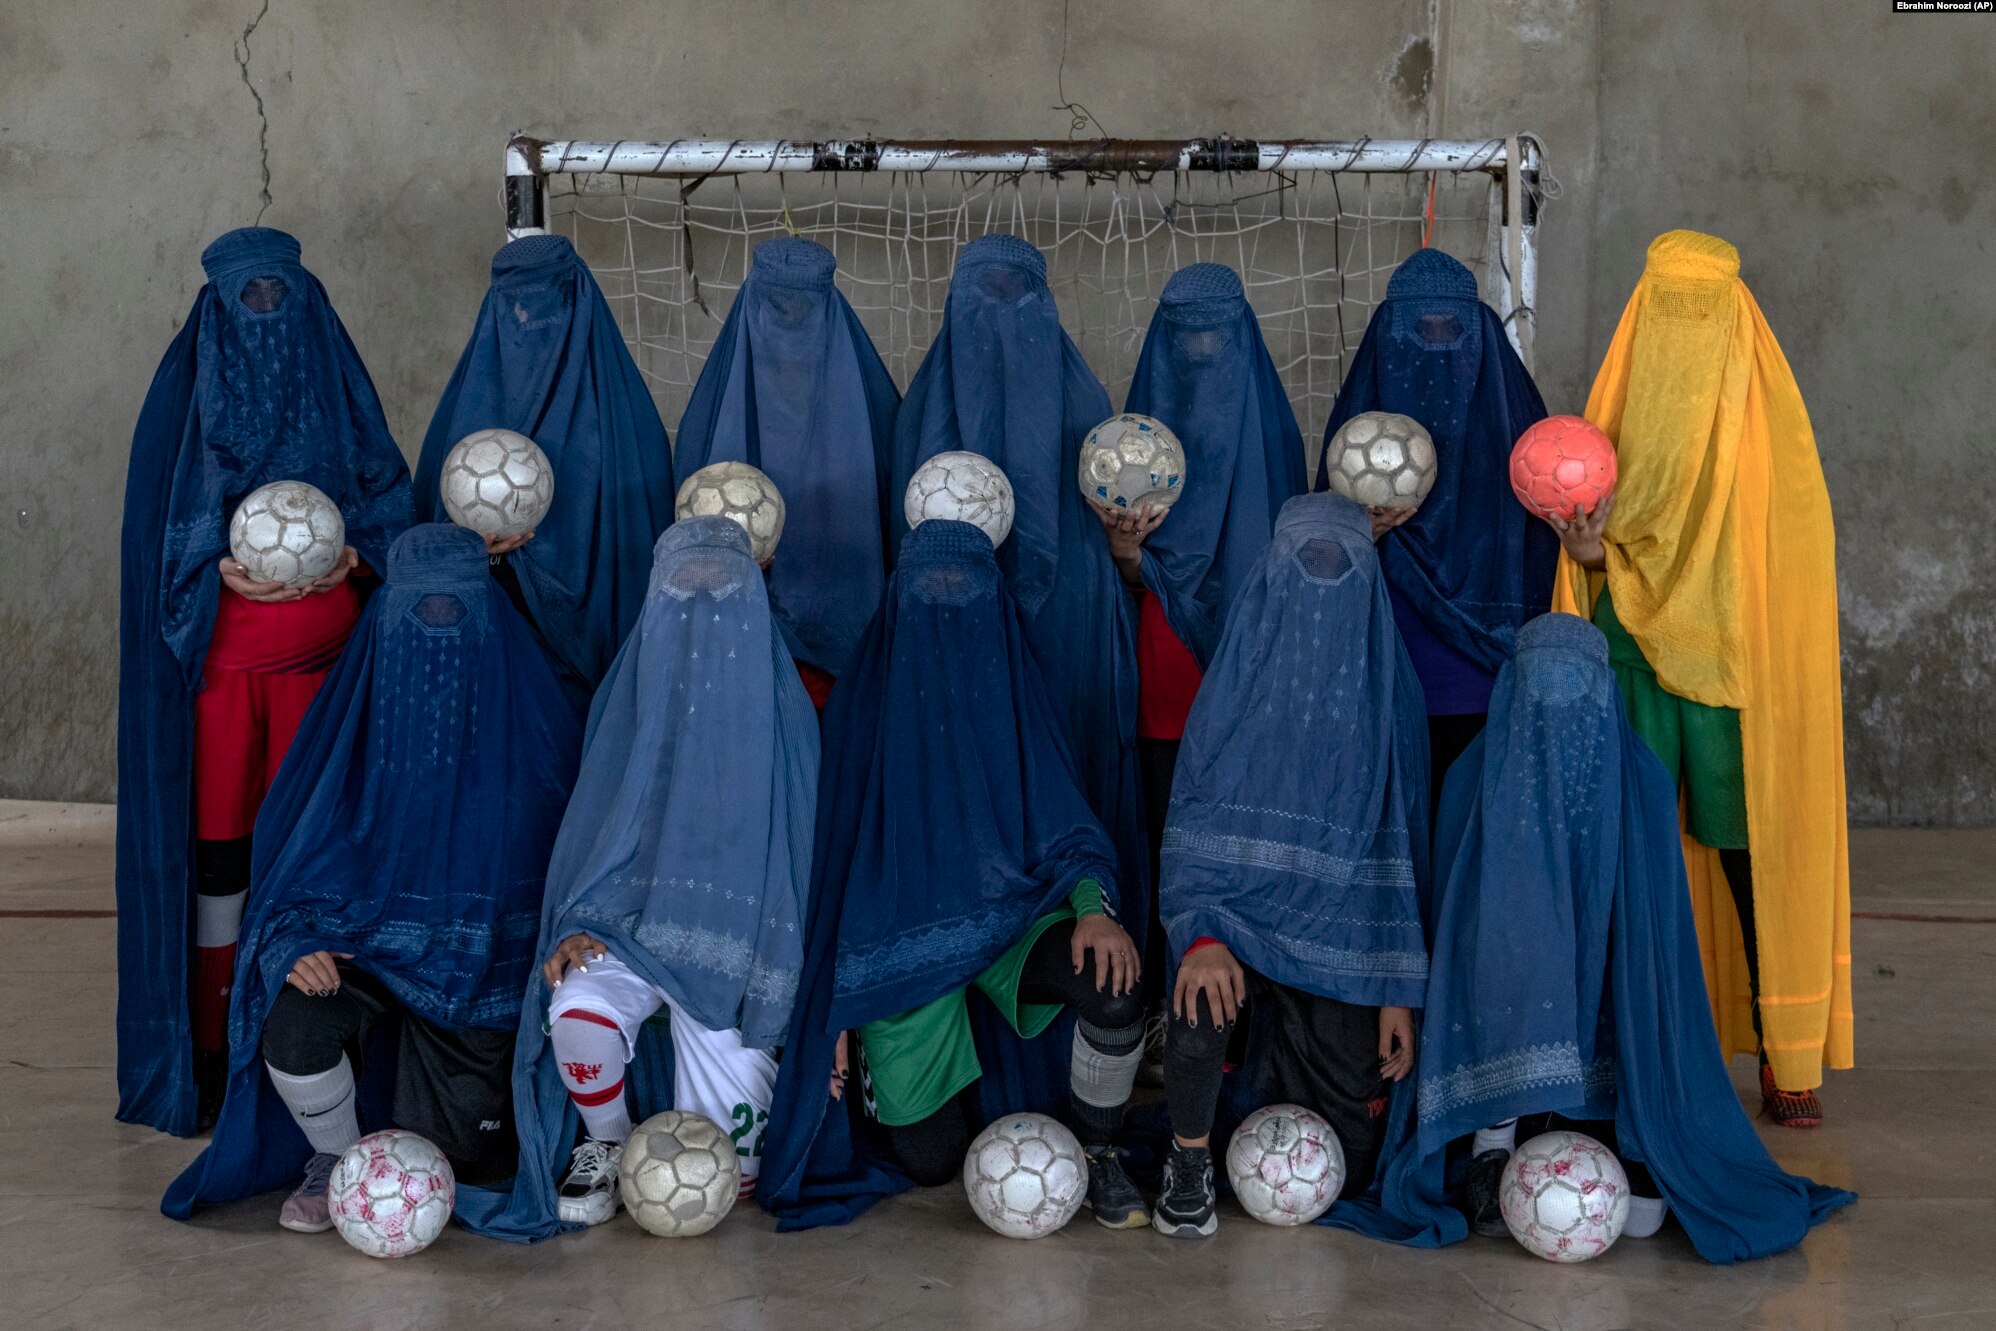 İnsan Hakları İzleme Örgütü, Afgan kadınlara yönelik sporda şiddet raporunu yayınladı